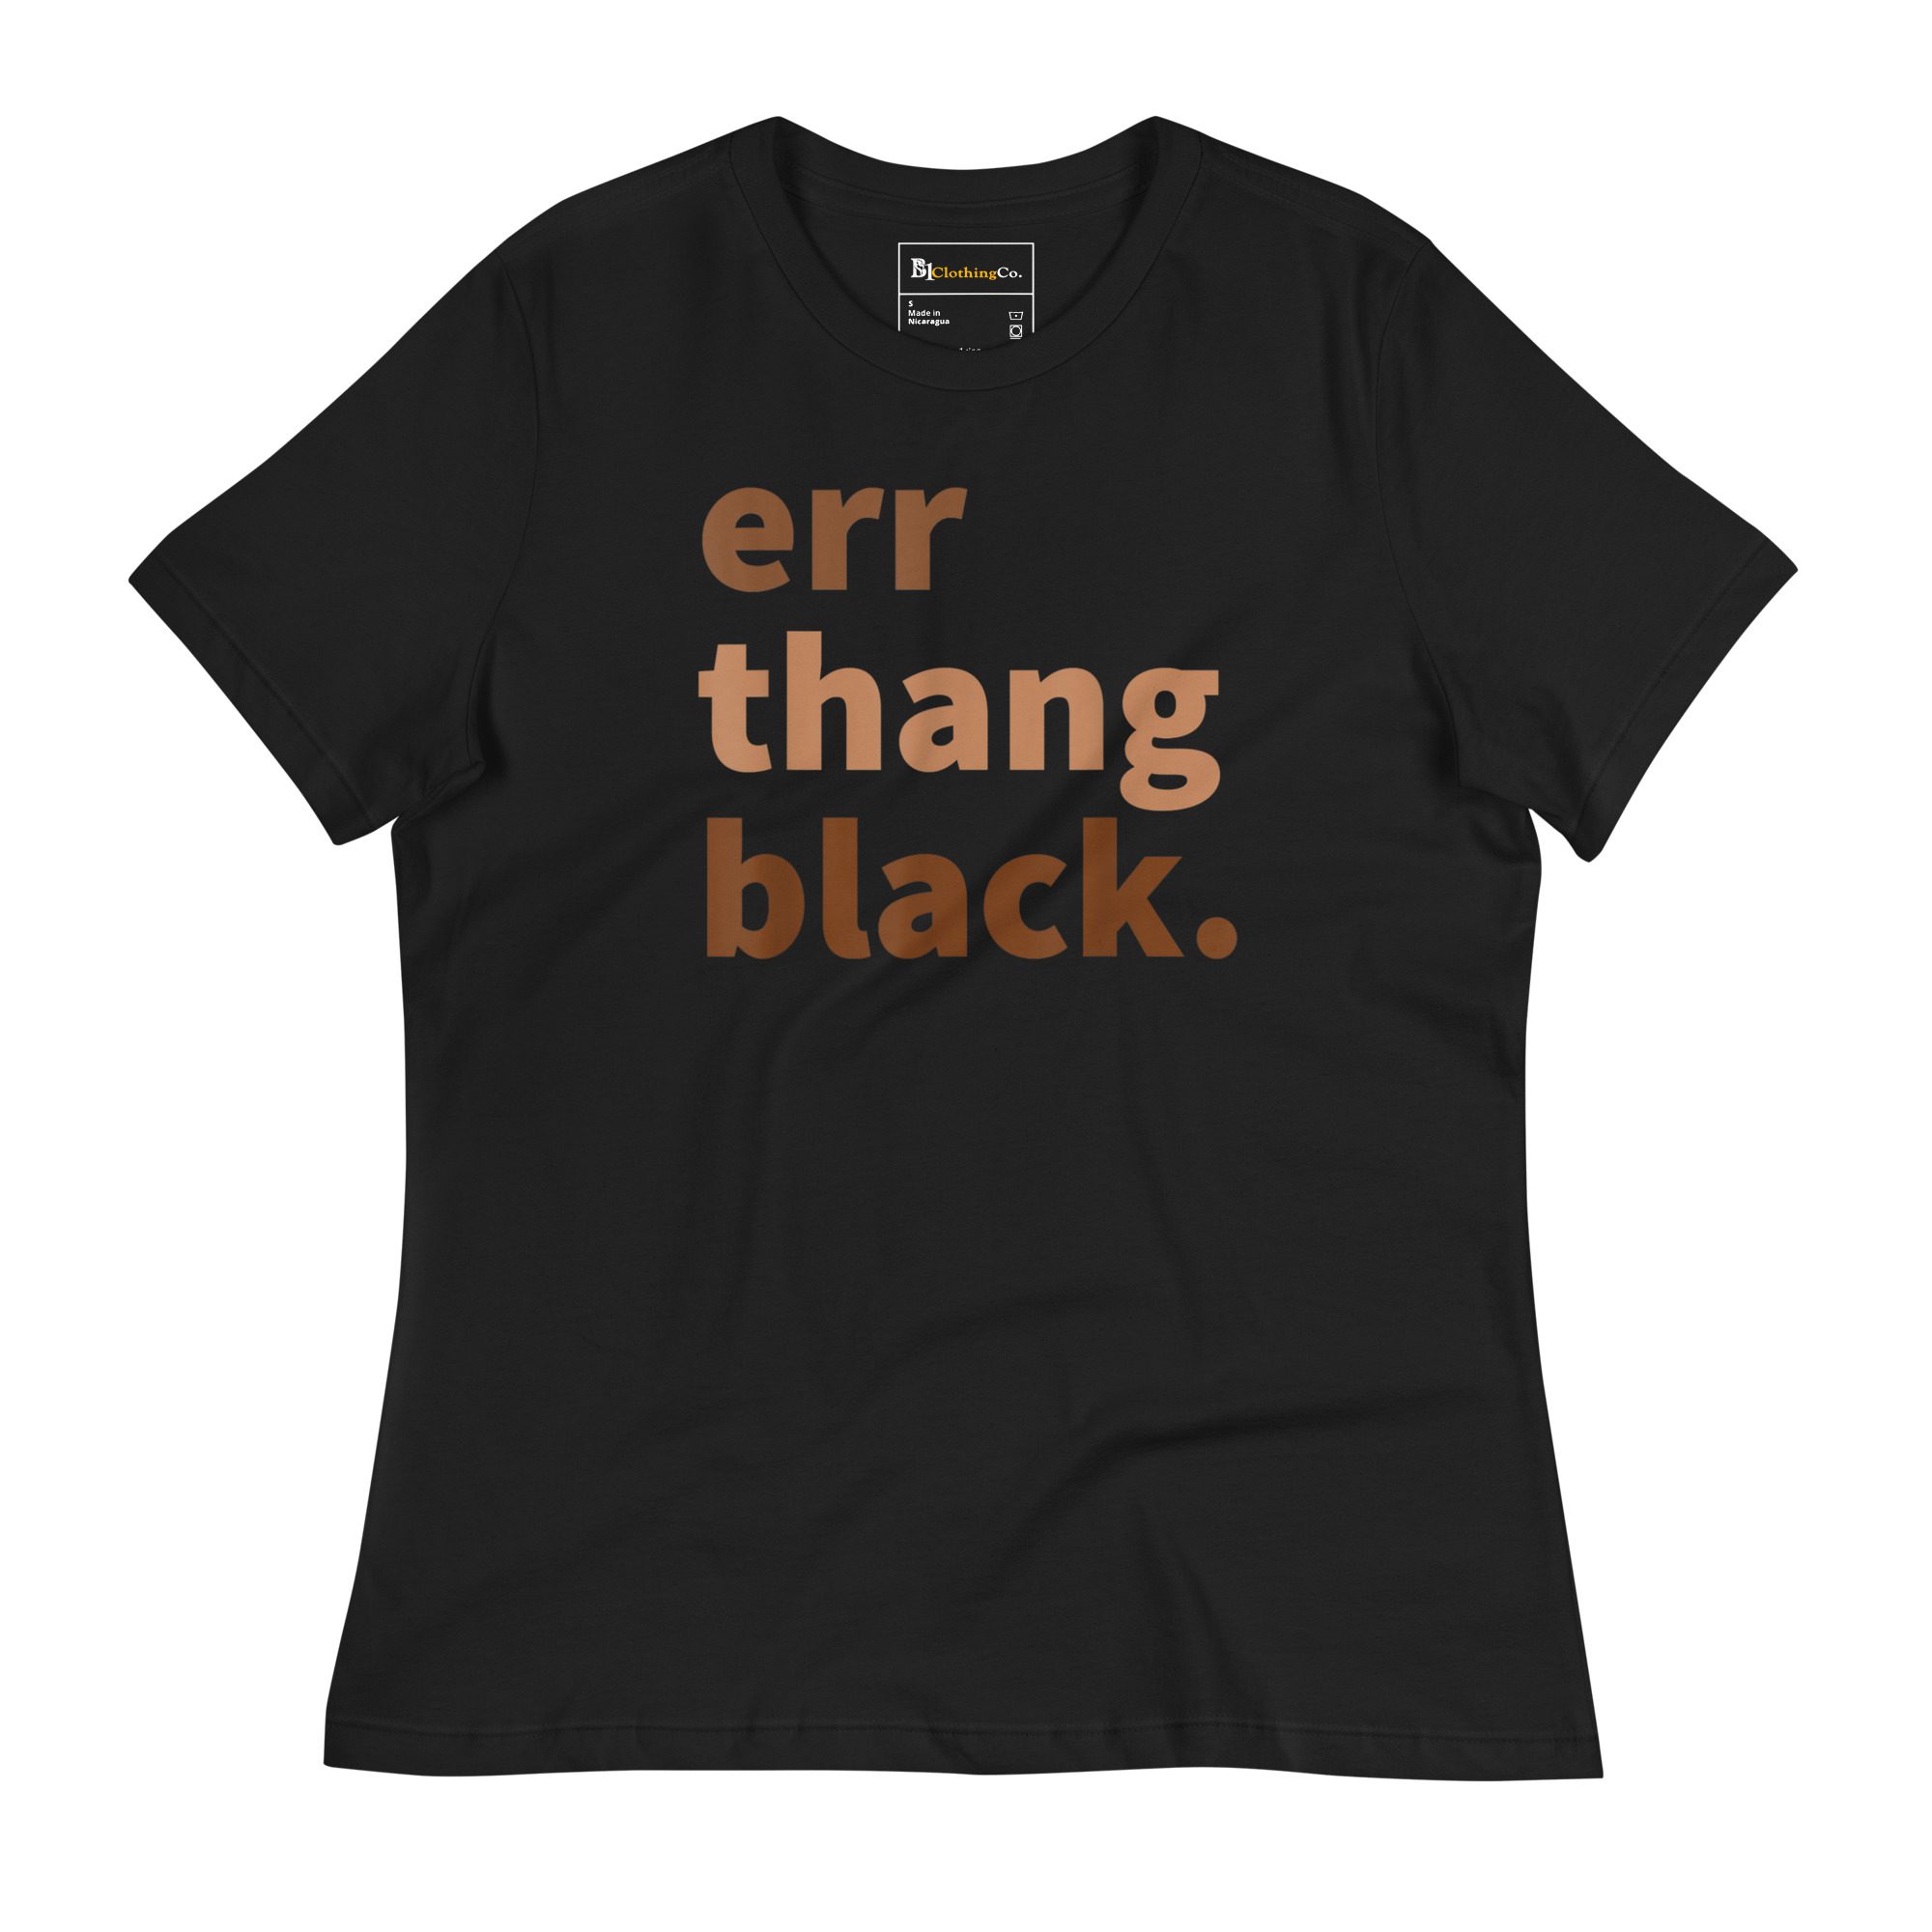 womens-relaxed-t-shirt-black-front-6411c803ba48a.jpg